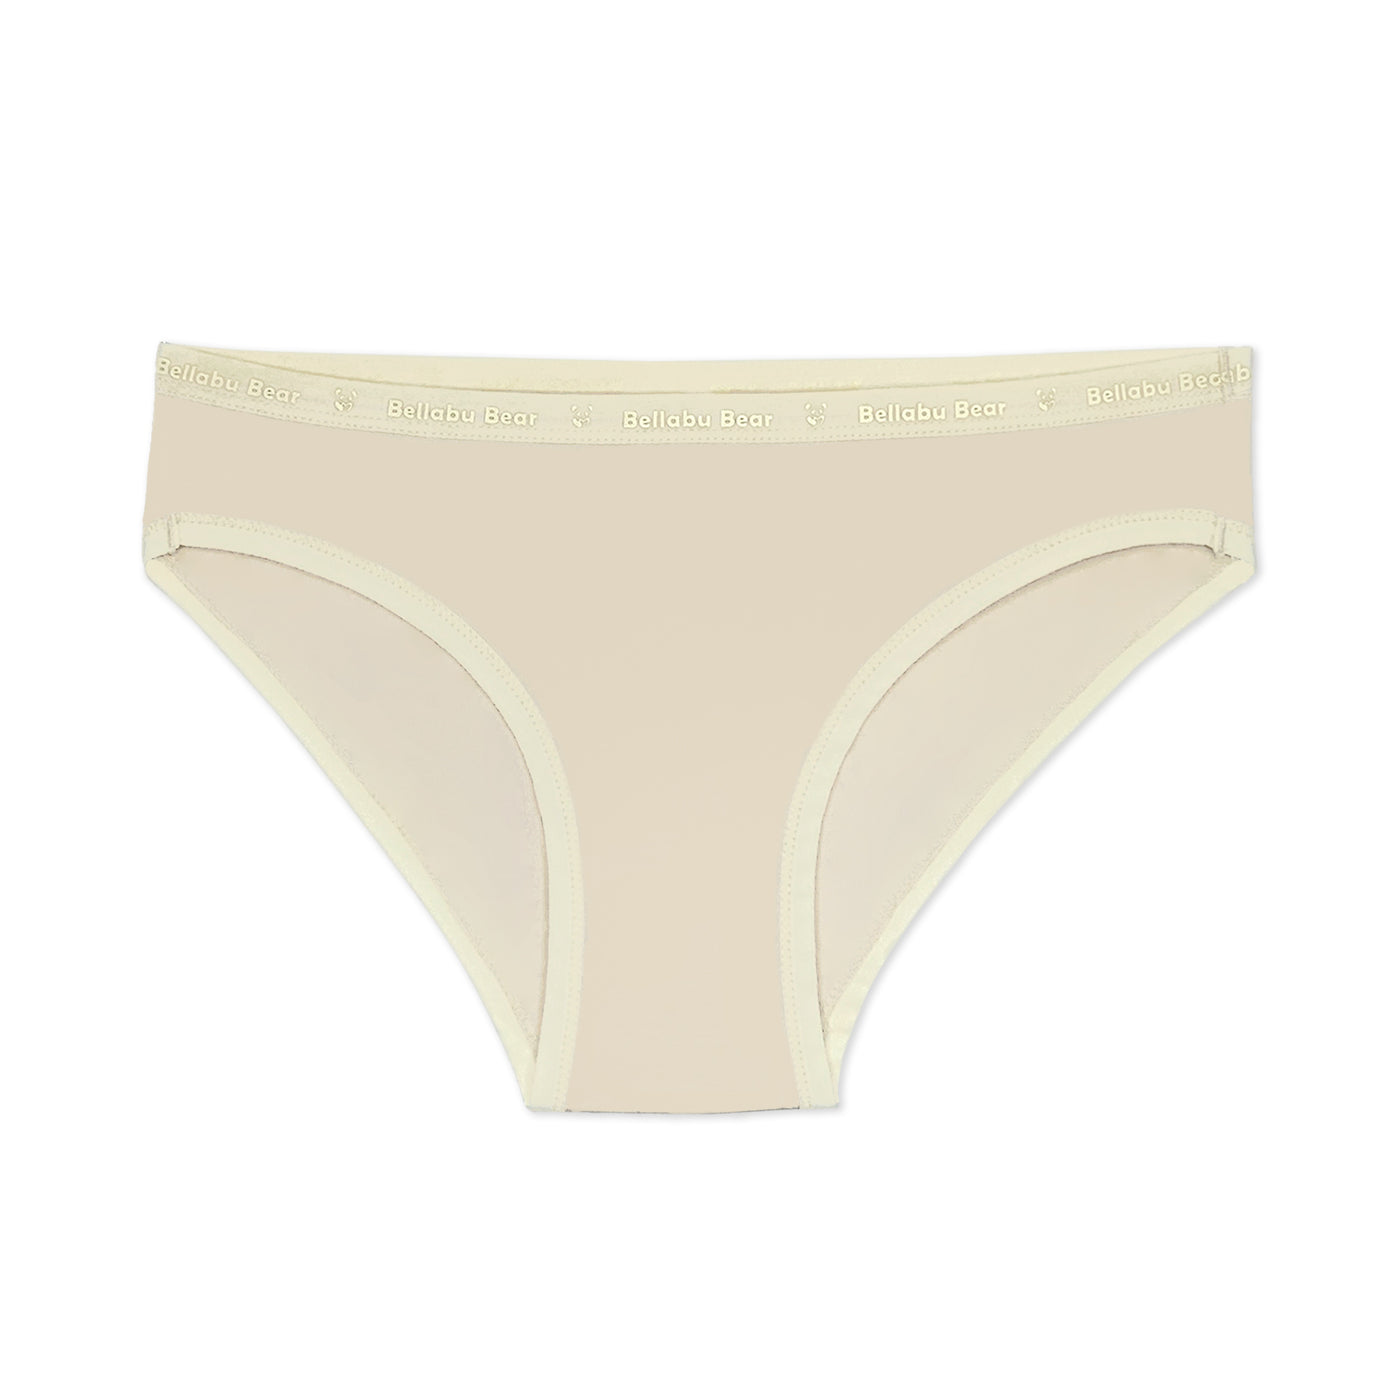 Women's Neutrals Bamboo Underwear 3-Pack